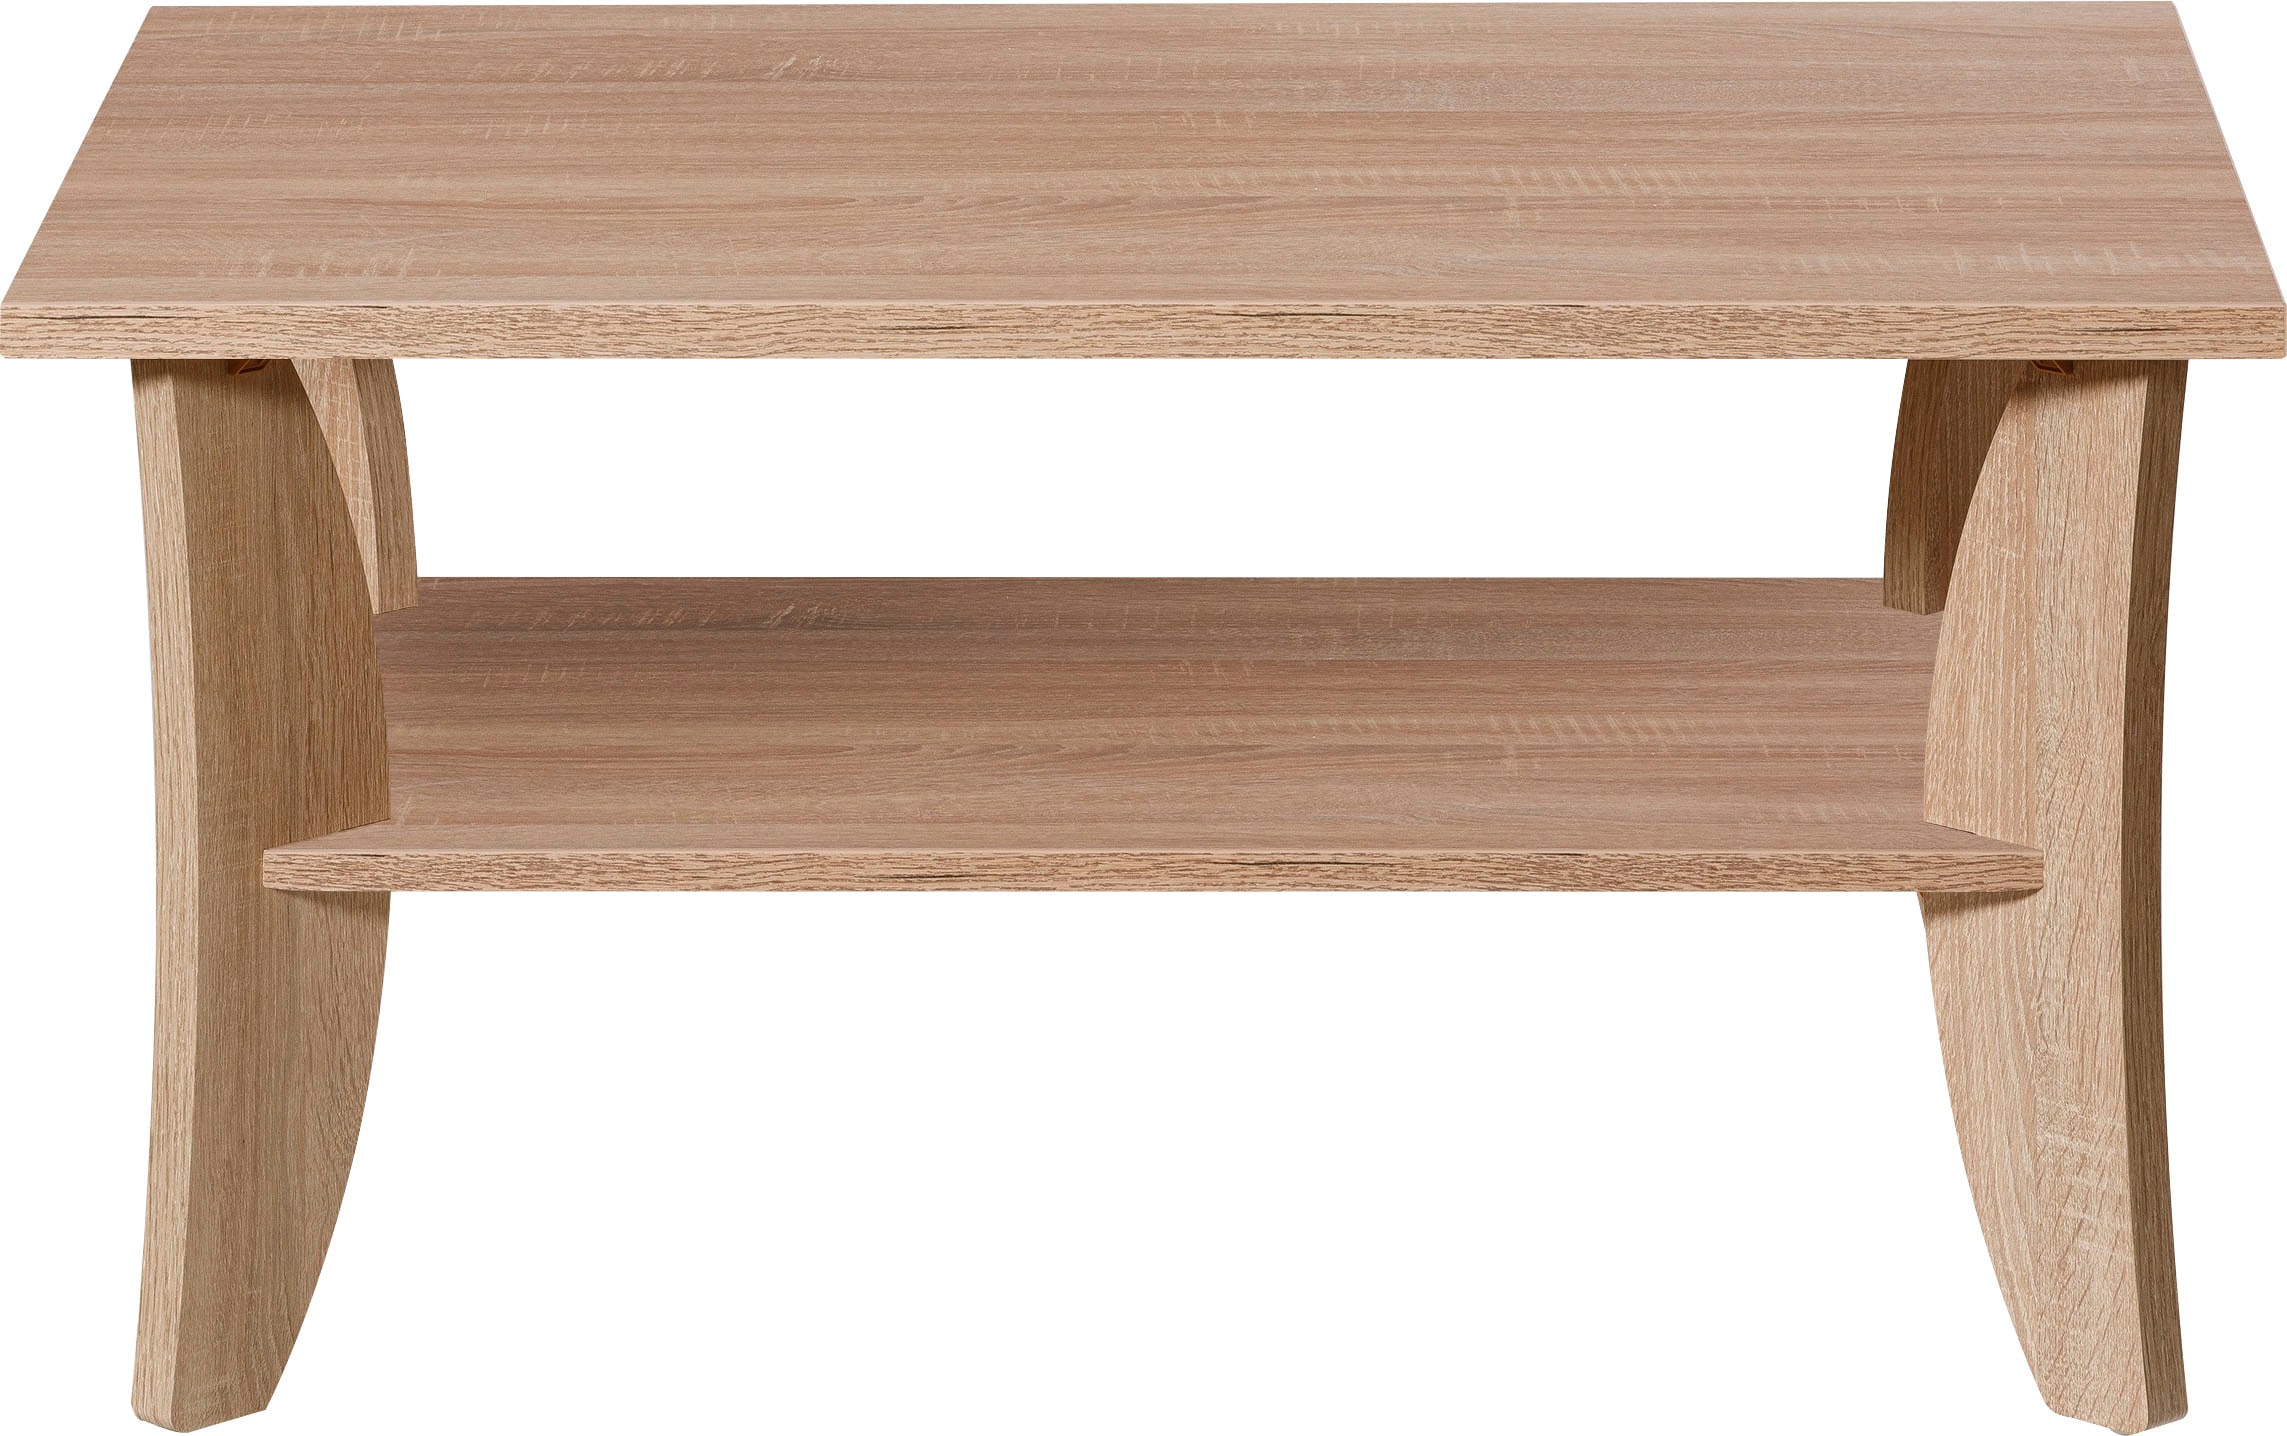 Line bequem Sonoma rechteckig, quadratisch Eiche, kaufen Holz PRO oder Nachbildung Couchtisch, Stauraum